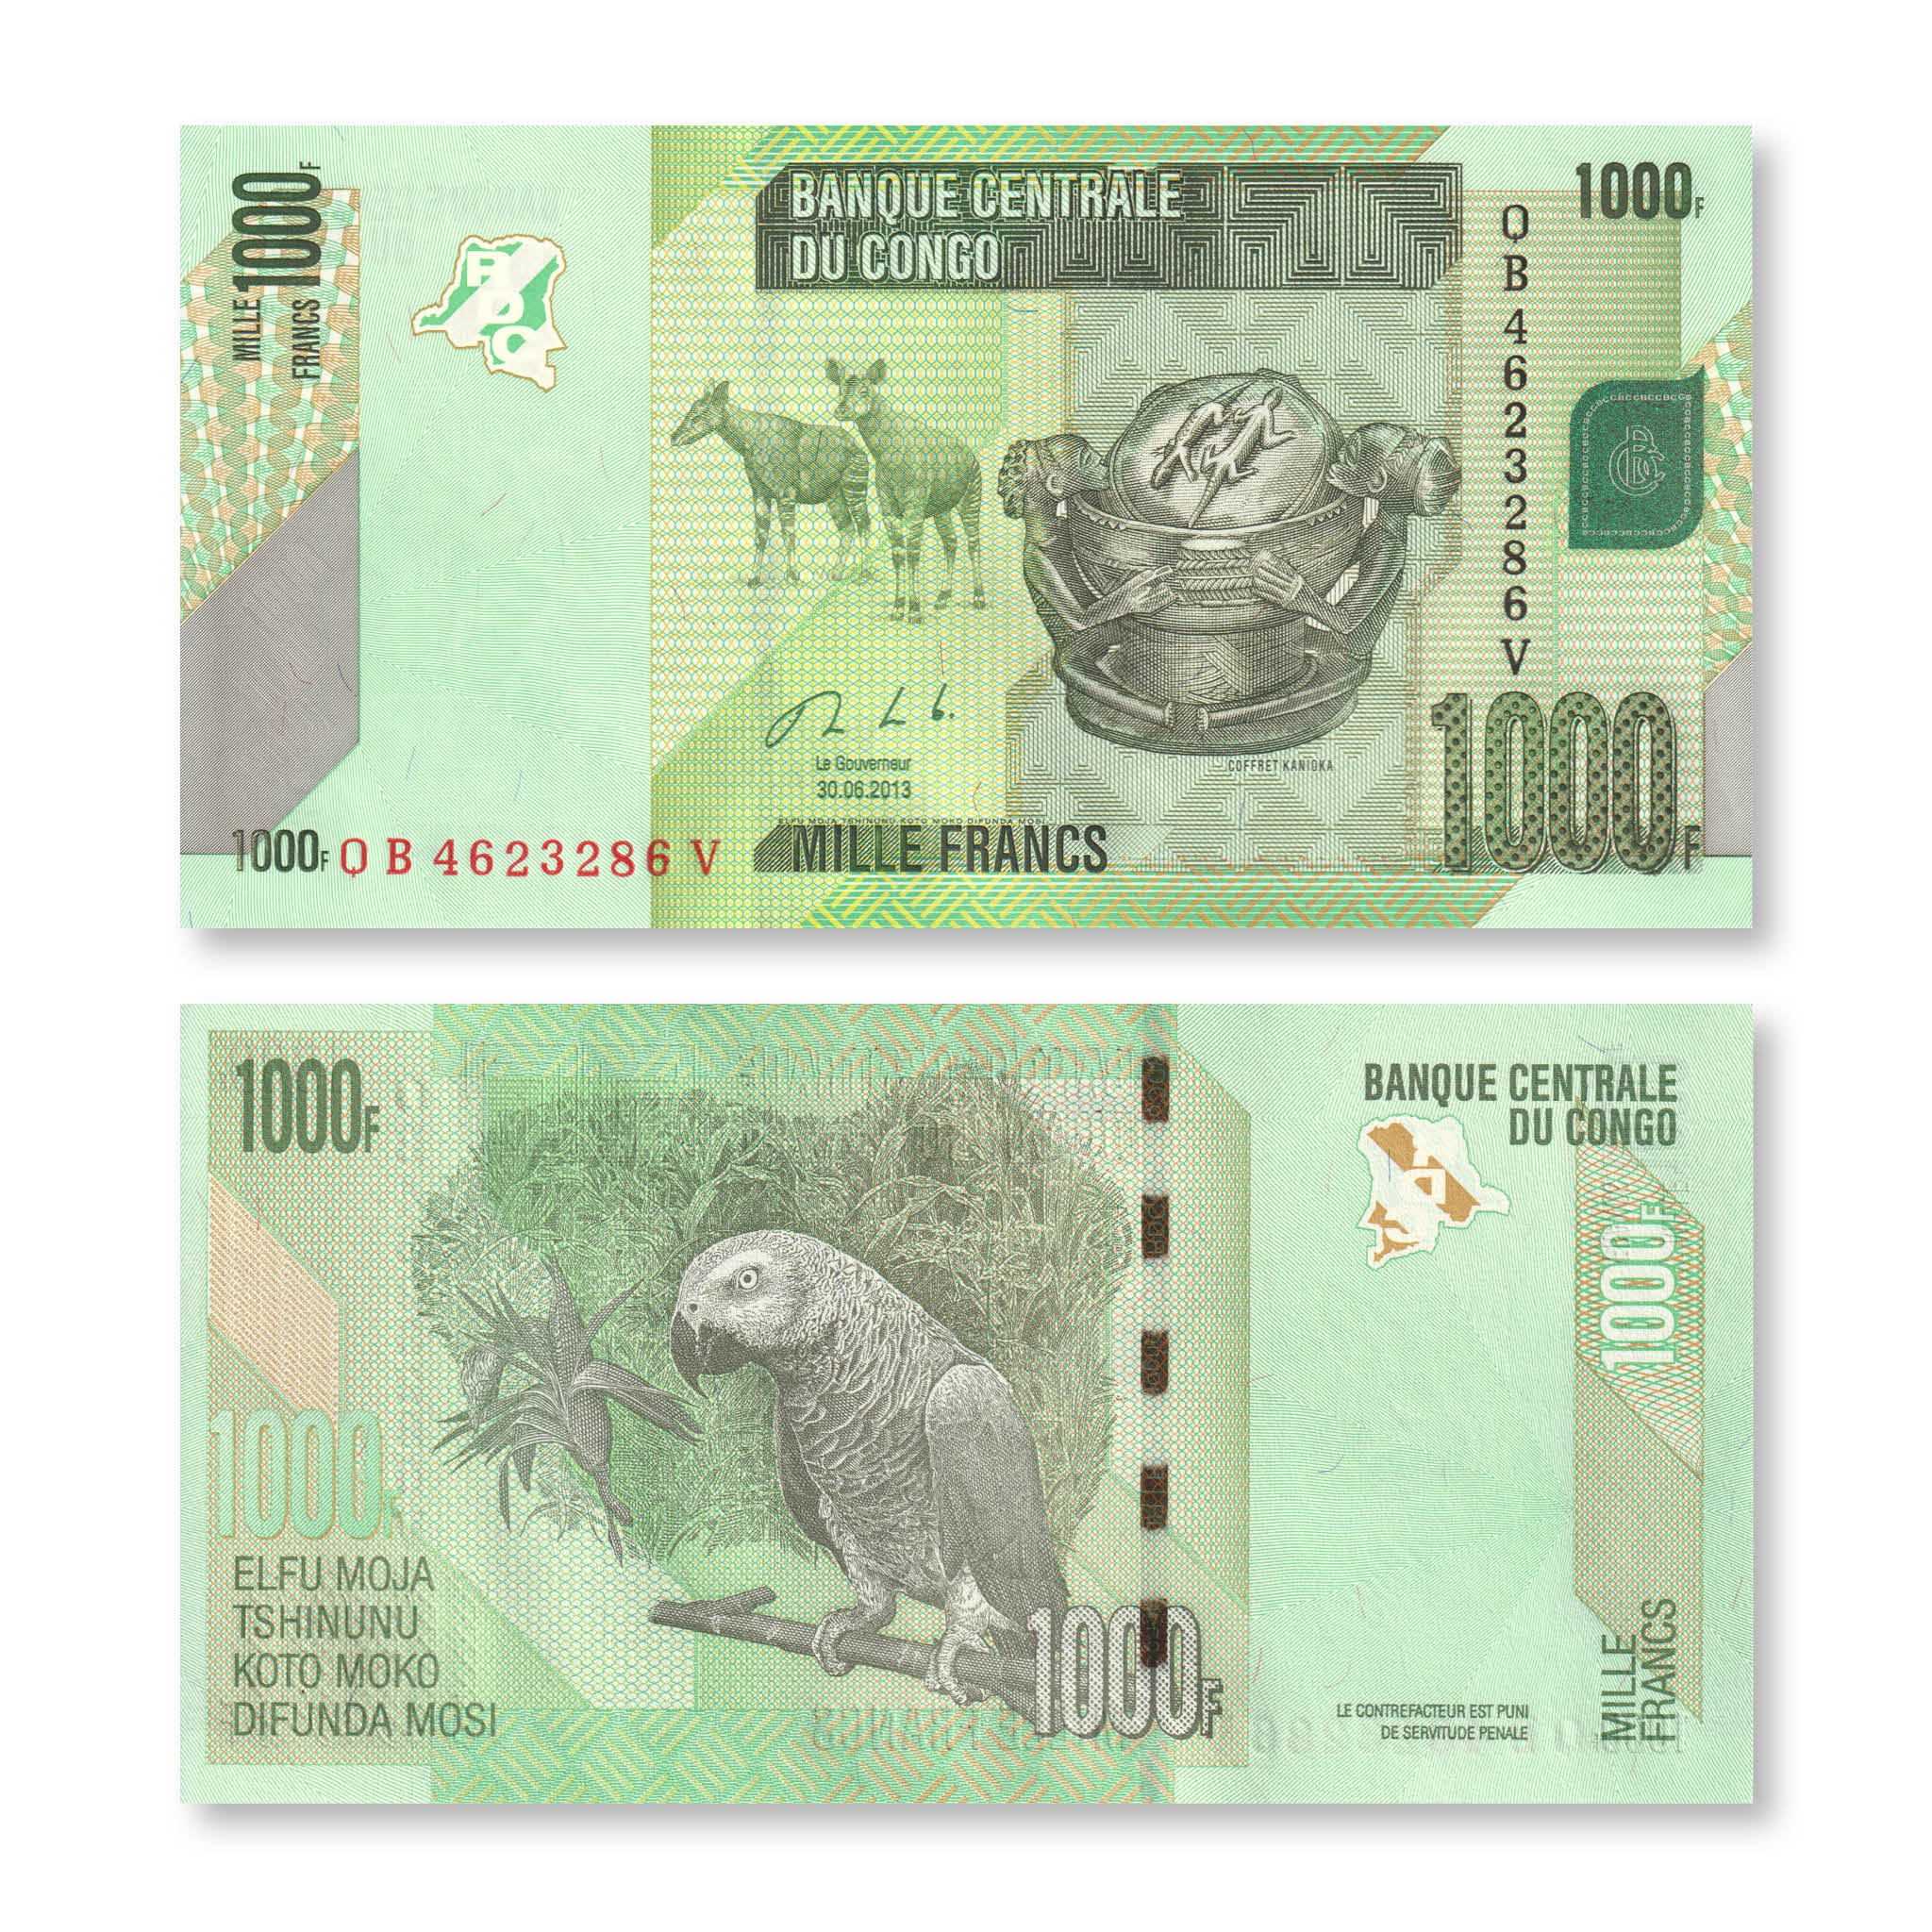 Congo Democratic Republic 1000 Francs, 2013, B323b, P101, UNC - Robert's World Money - World Banknotes